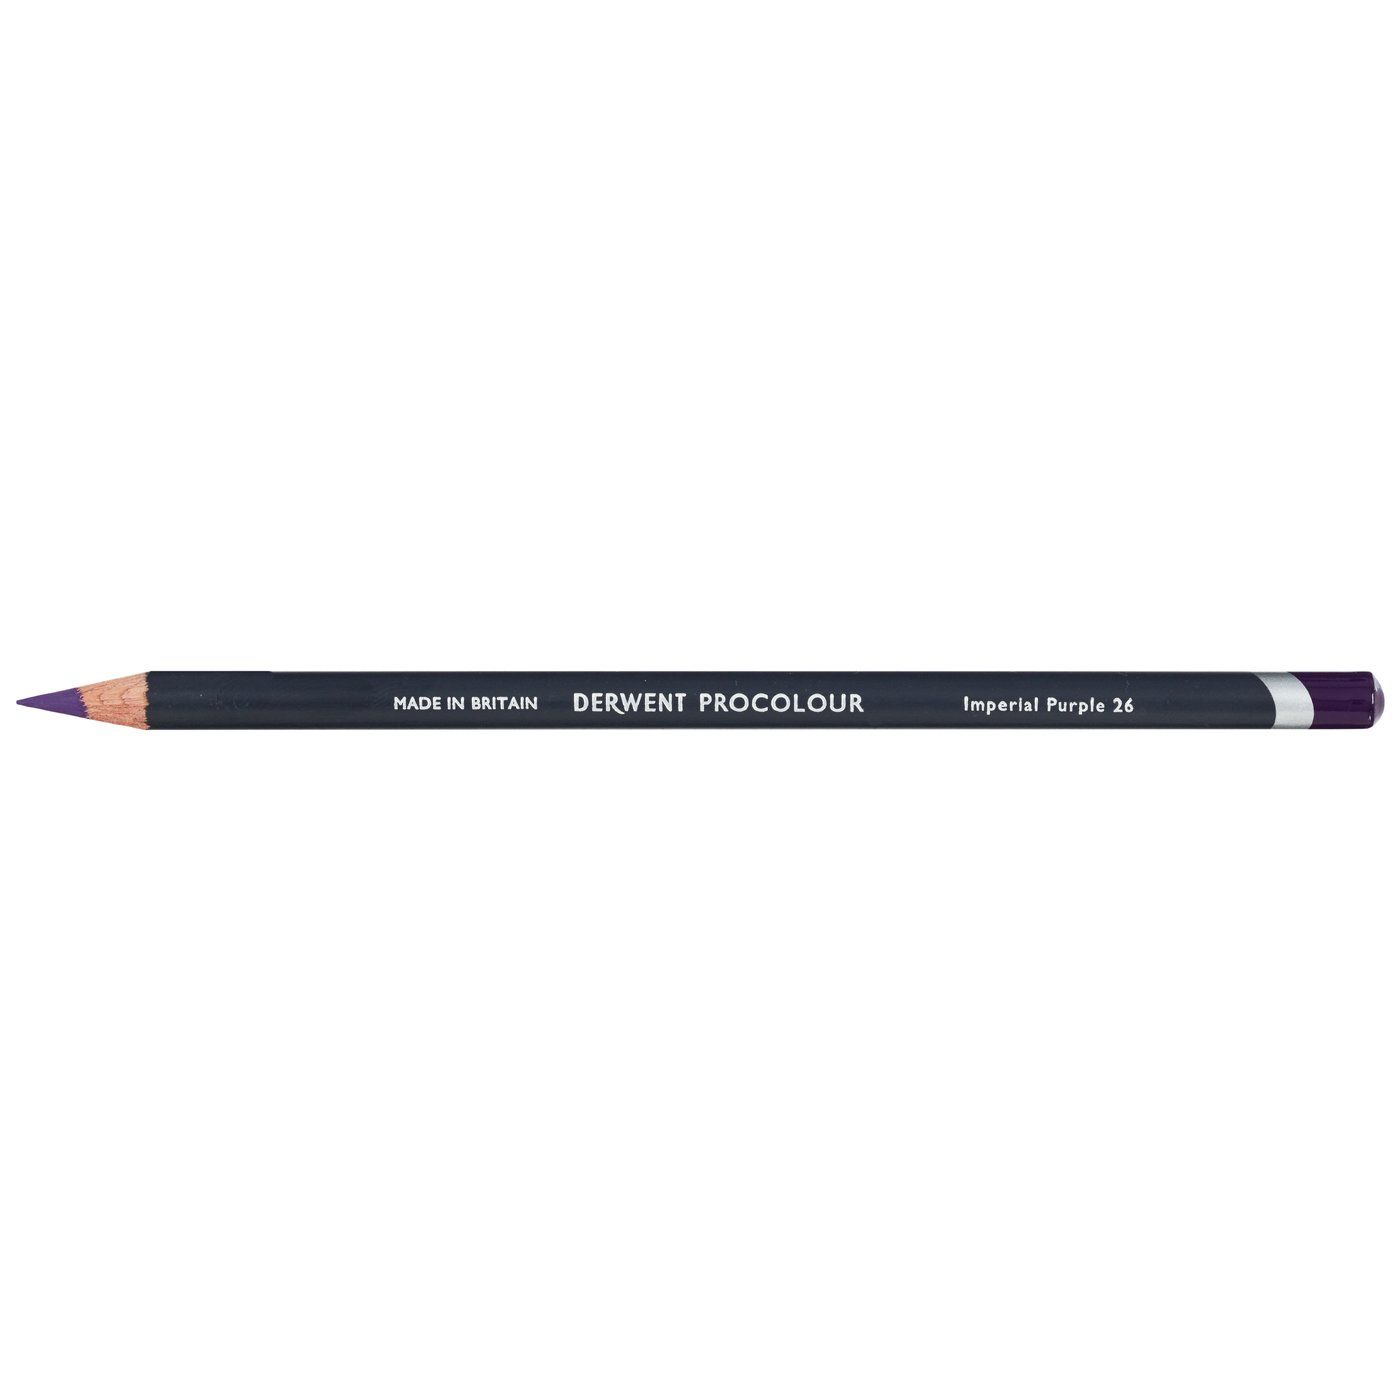 Derwent Procolour Pencil - 26 Imperial Purple